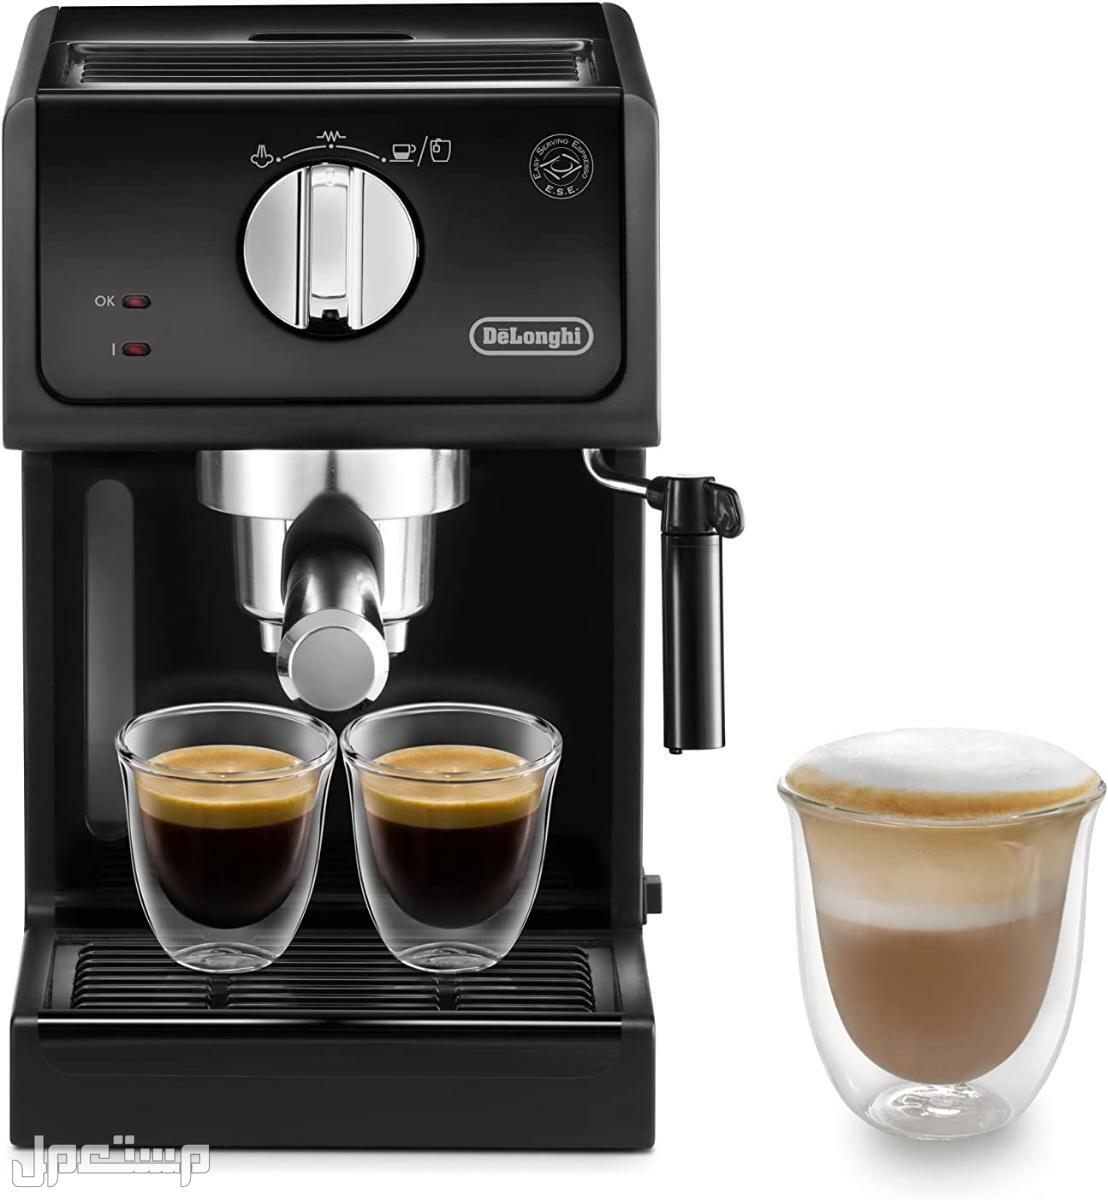 عيوب ومميزات ومواصفات وسعر ماكينة قهوة ديلونجى ديديكا في جيبوتي لماذا عليك شراء ماكينة قهوة ديلونجي ديديكا ؟